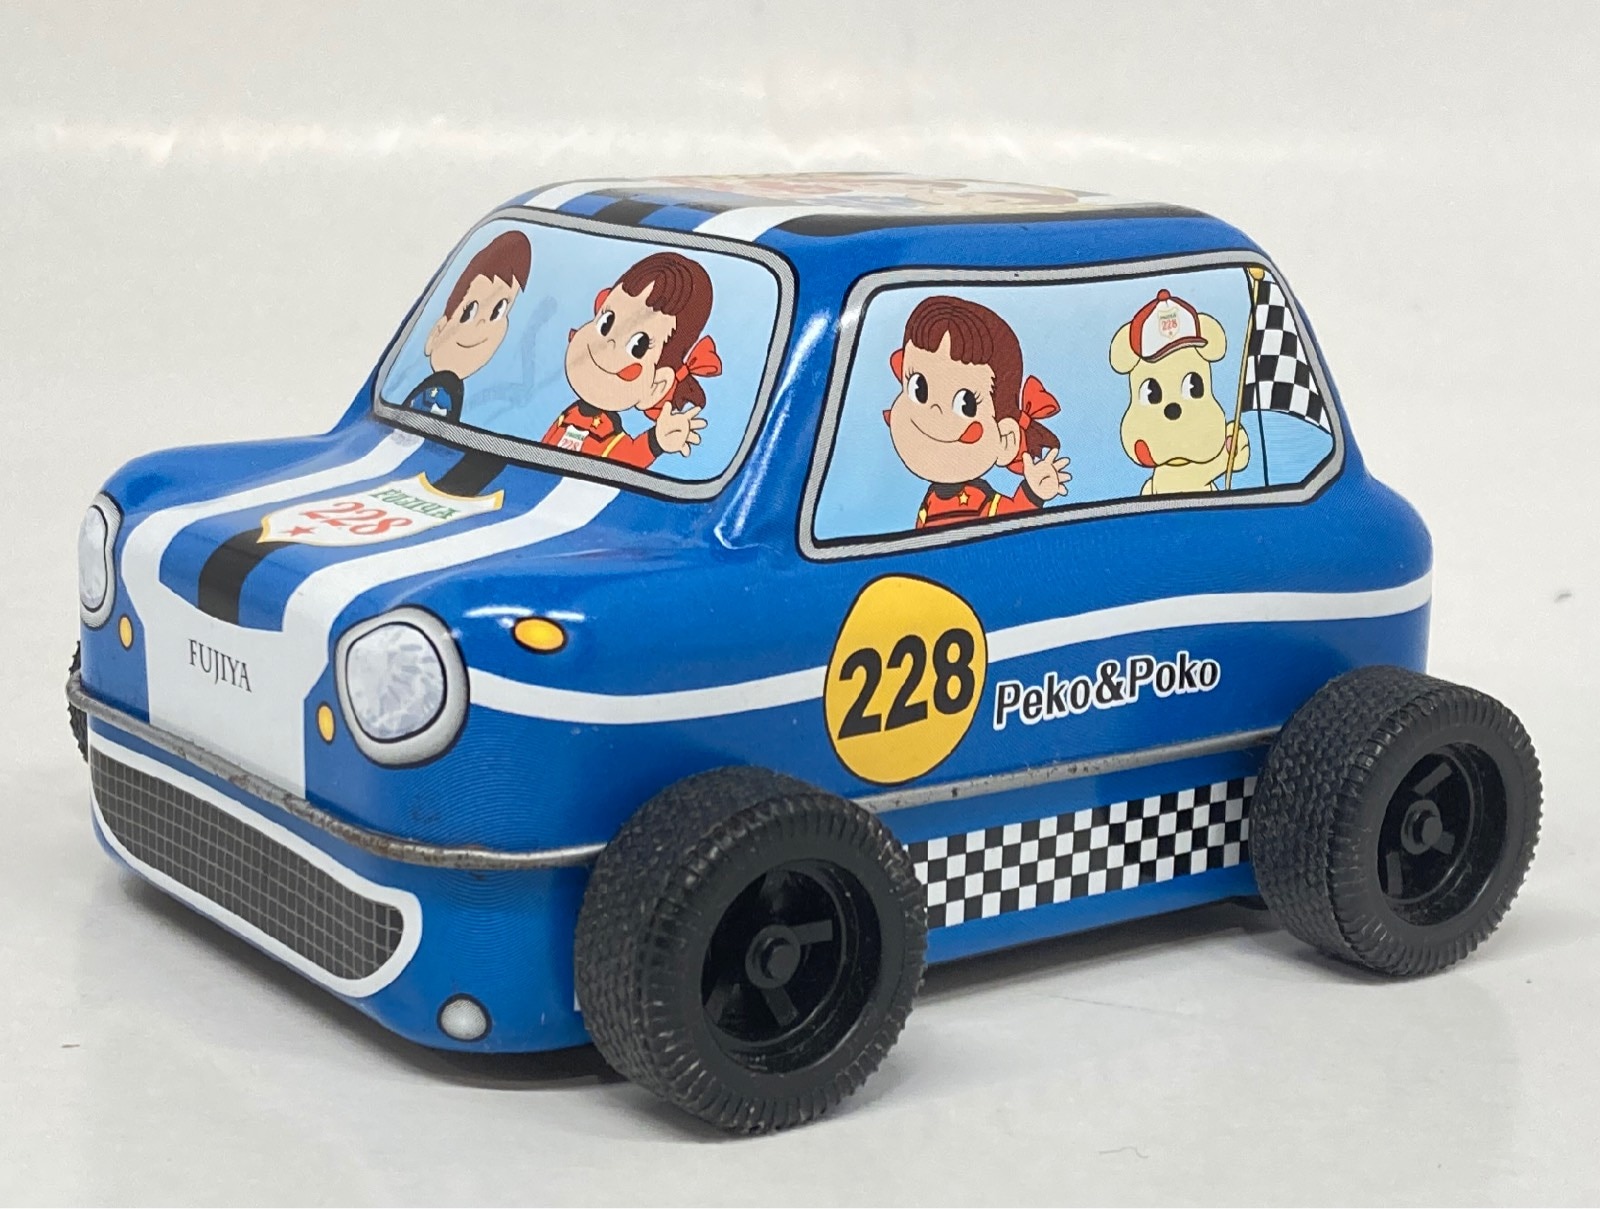 レーシングカーペコちゃん - おもちゃ